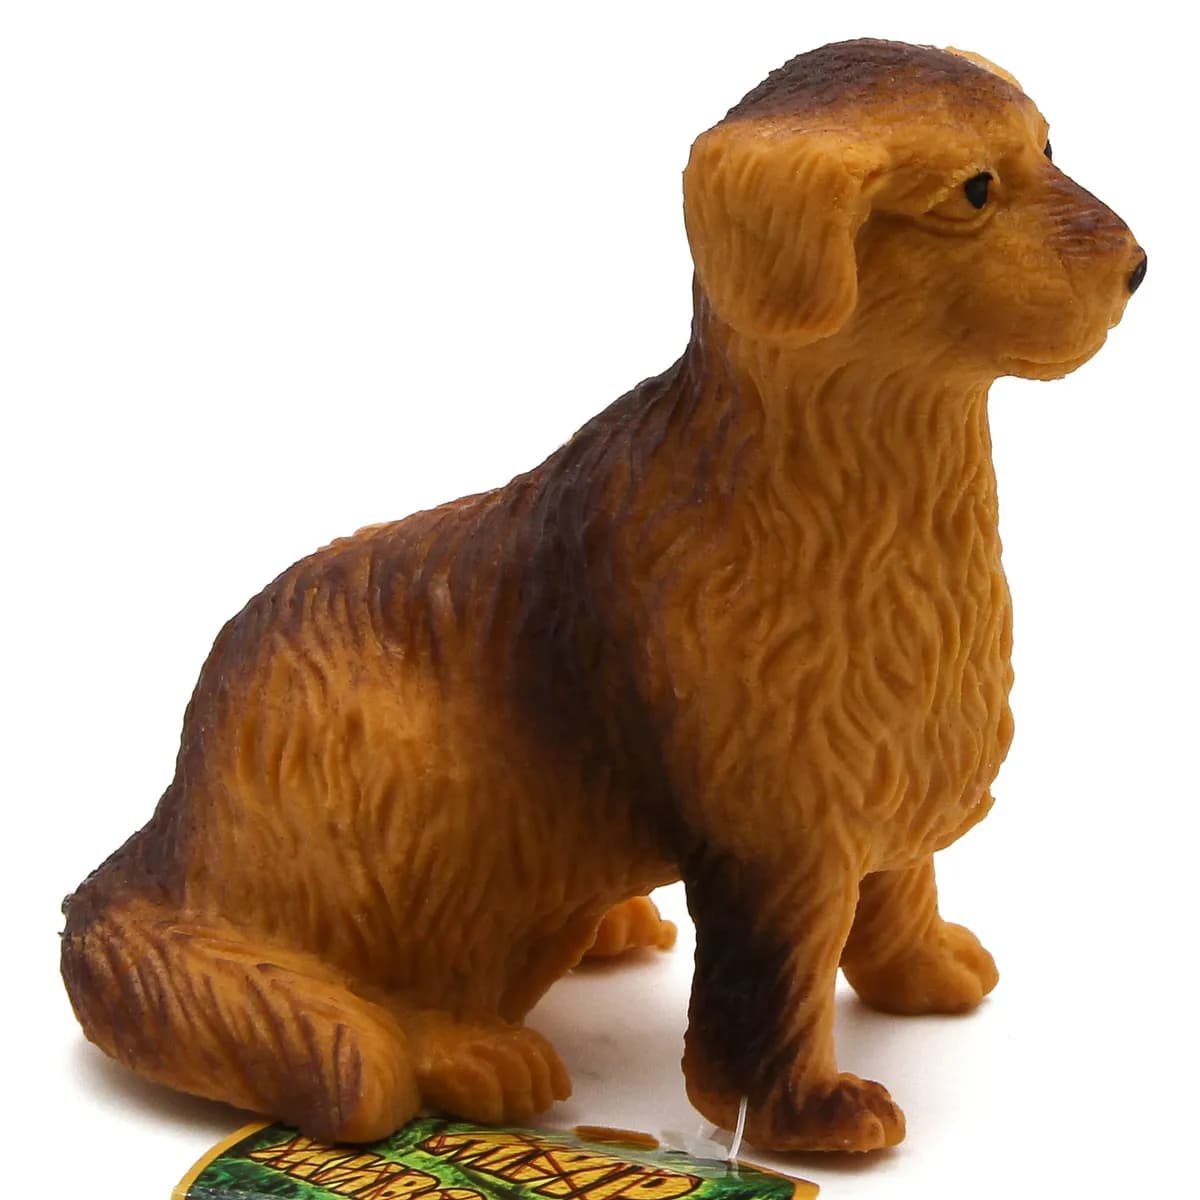 Резиновые фигурки-тянучки Play Smart «Домашние животные с фермы» 7582, 12 см.  / 5 шт.